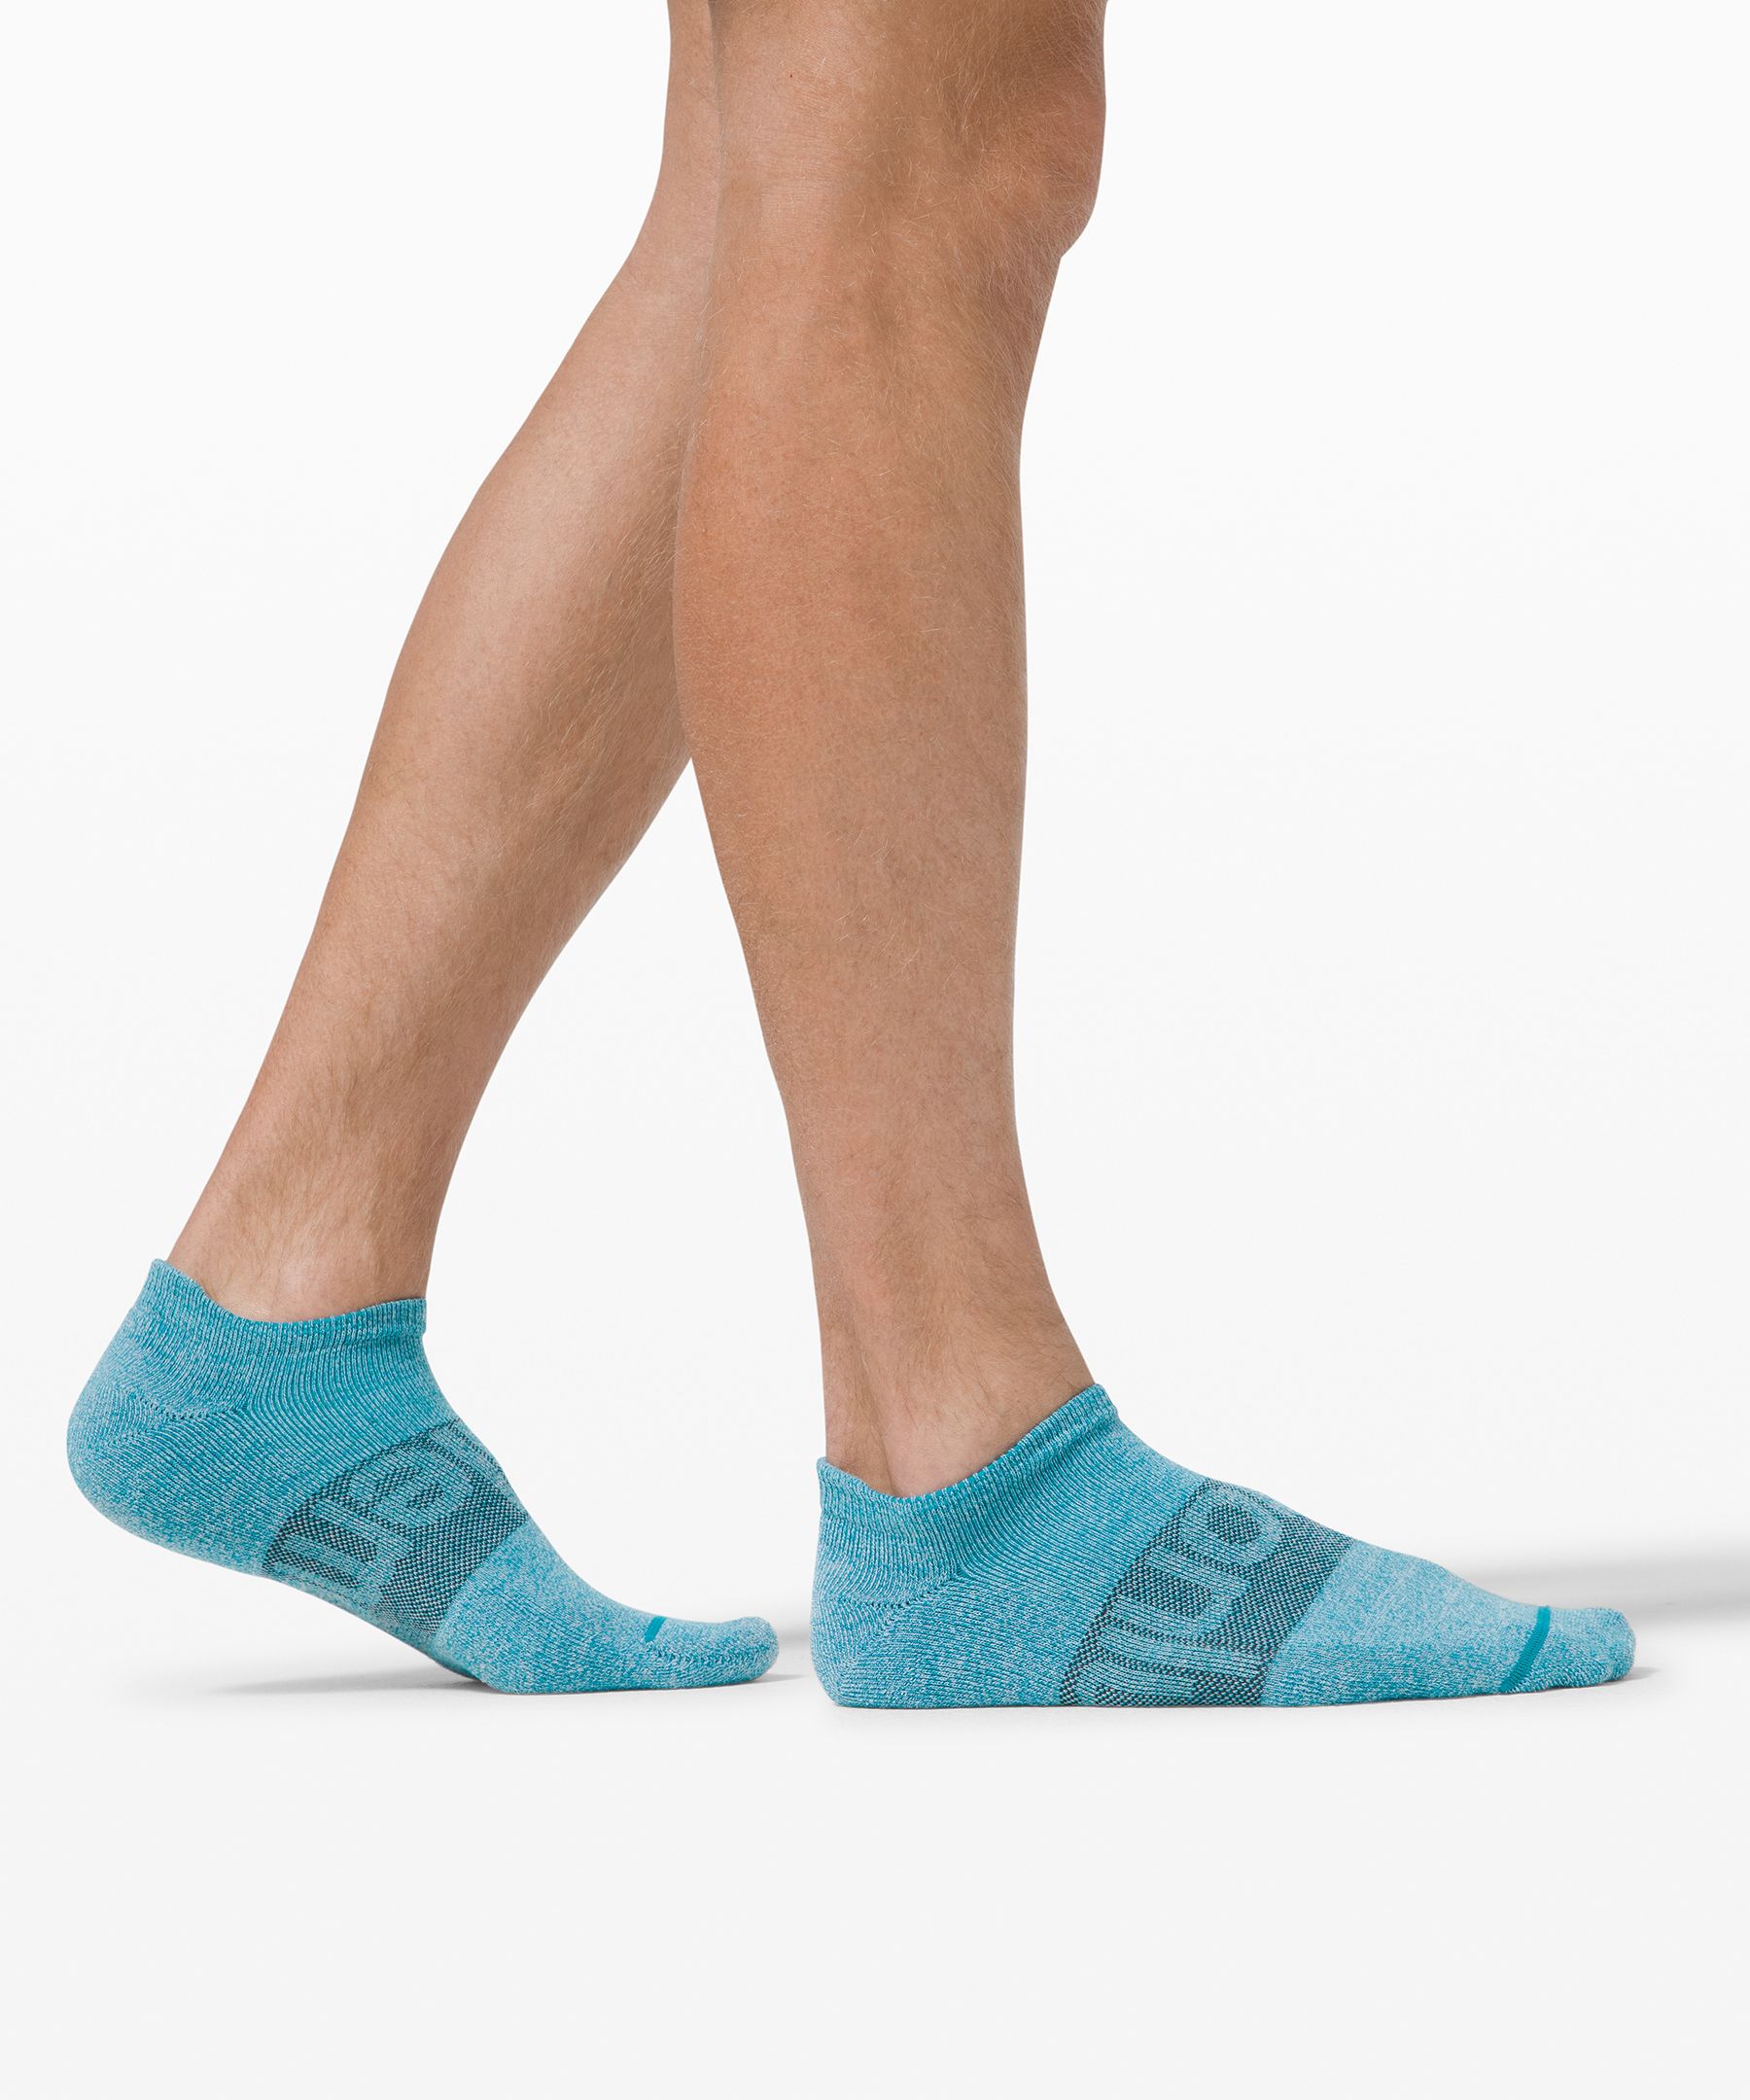 lululemon ankle socks